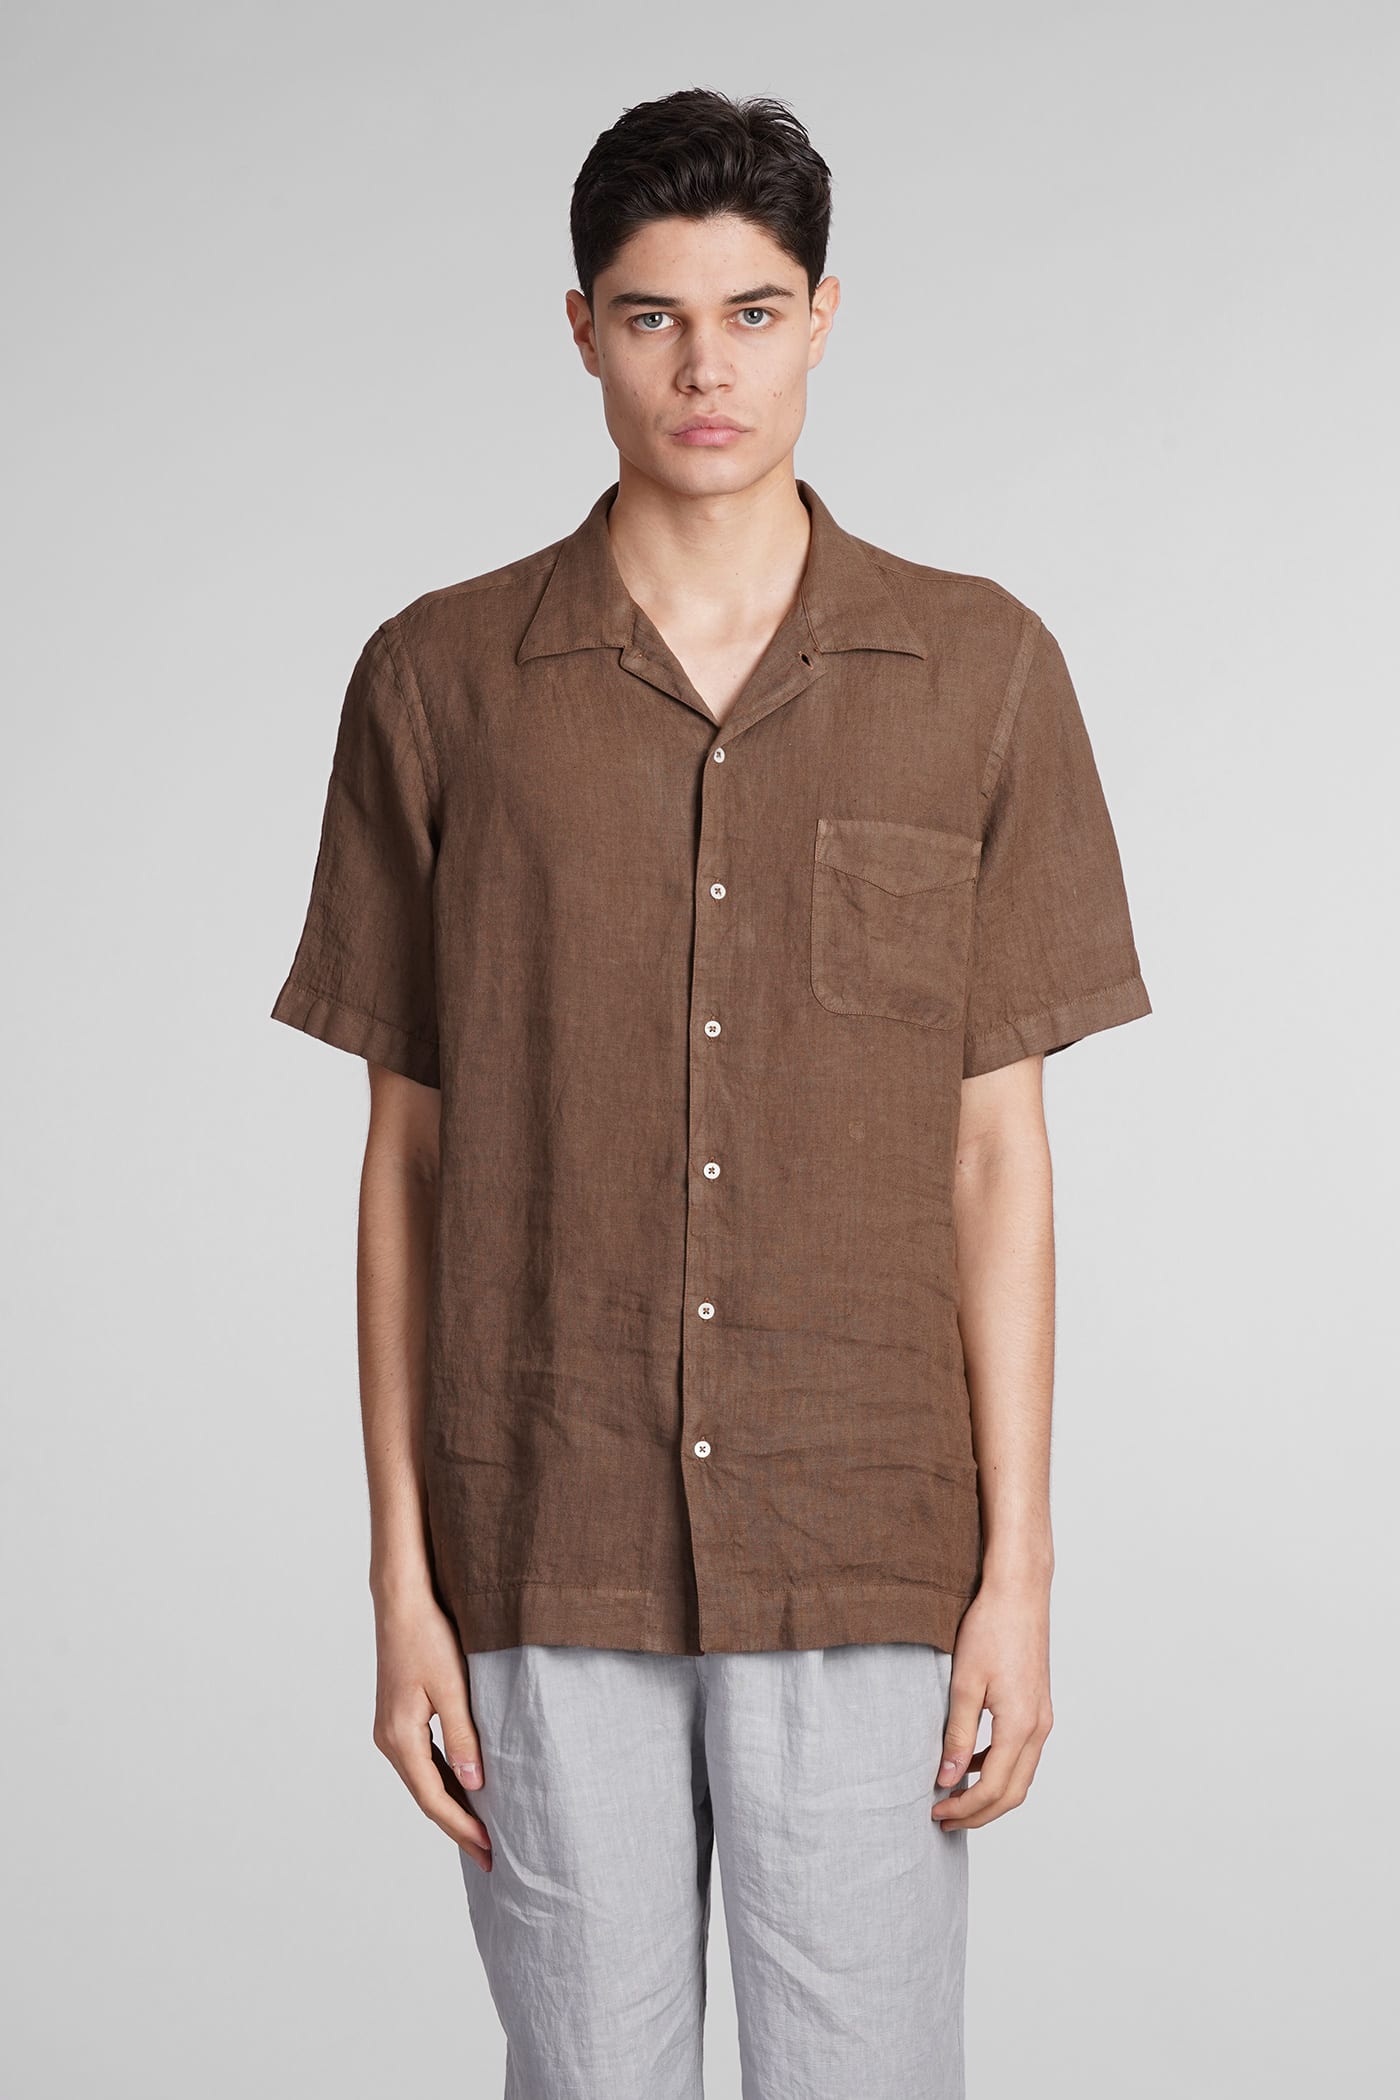 Venice Shirt In Brown Linen